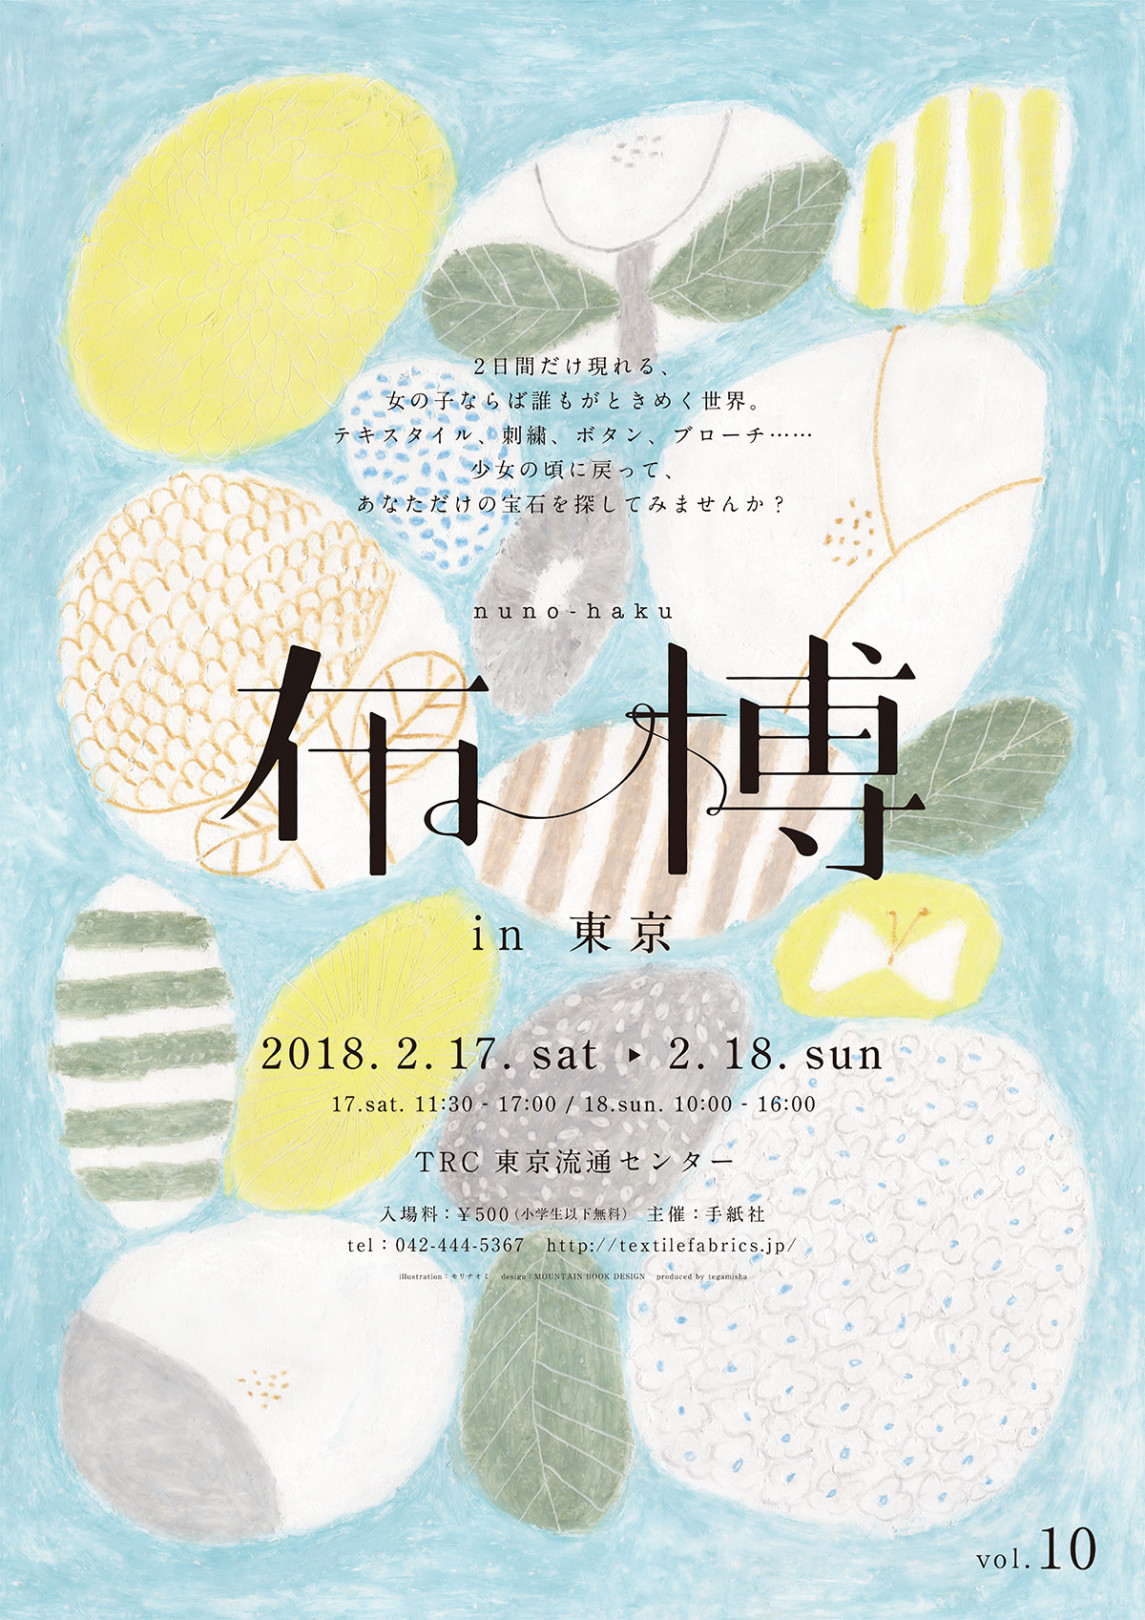 世界一の布の祭典「布博」、2日間にわたり東京流通センターにて開催